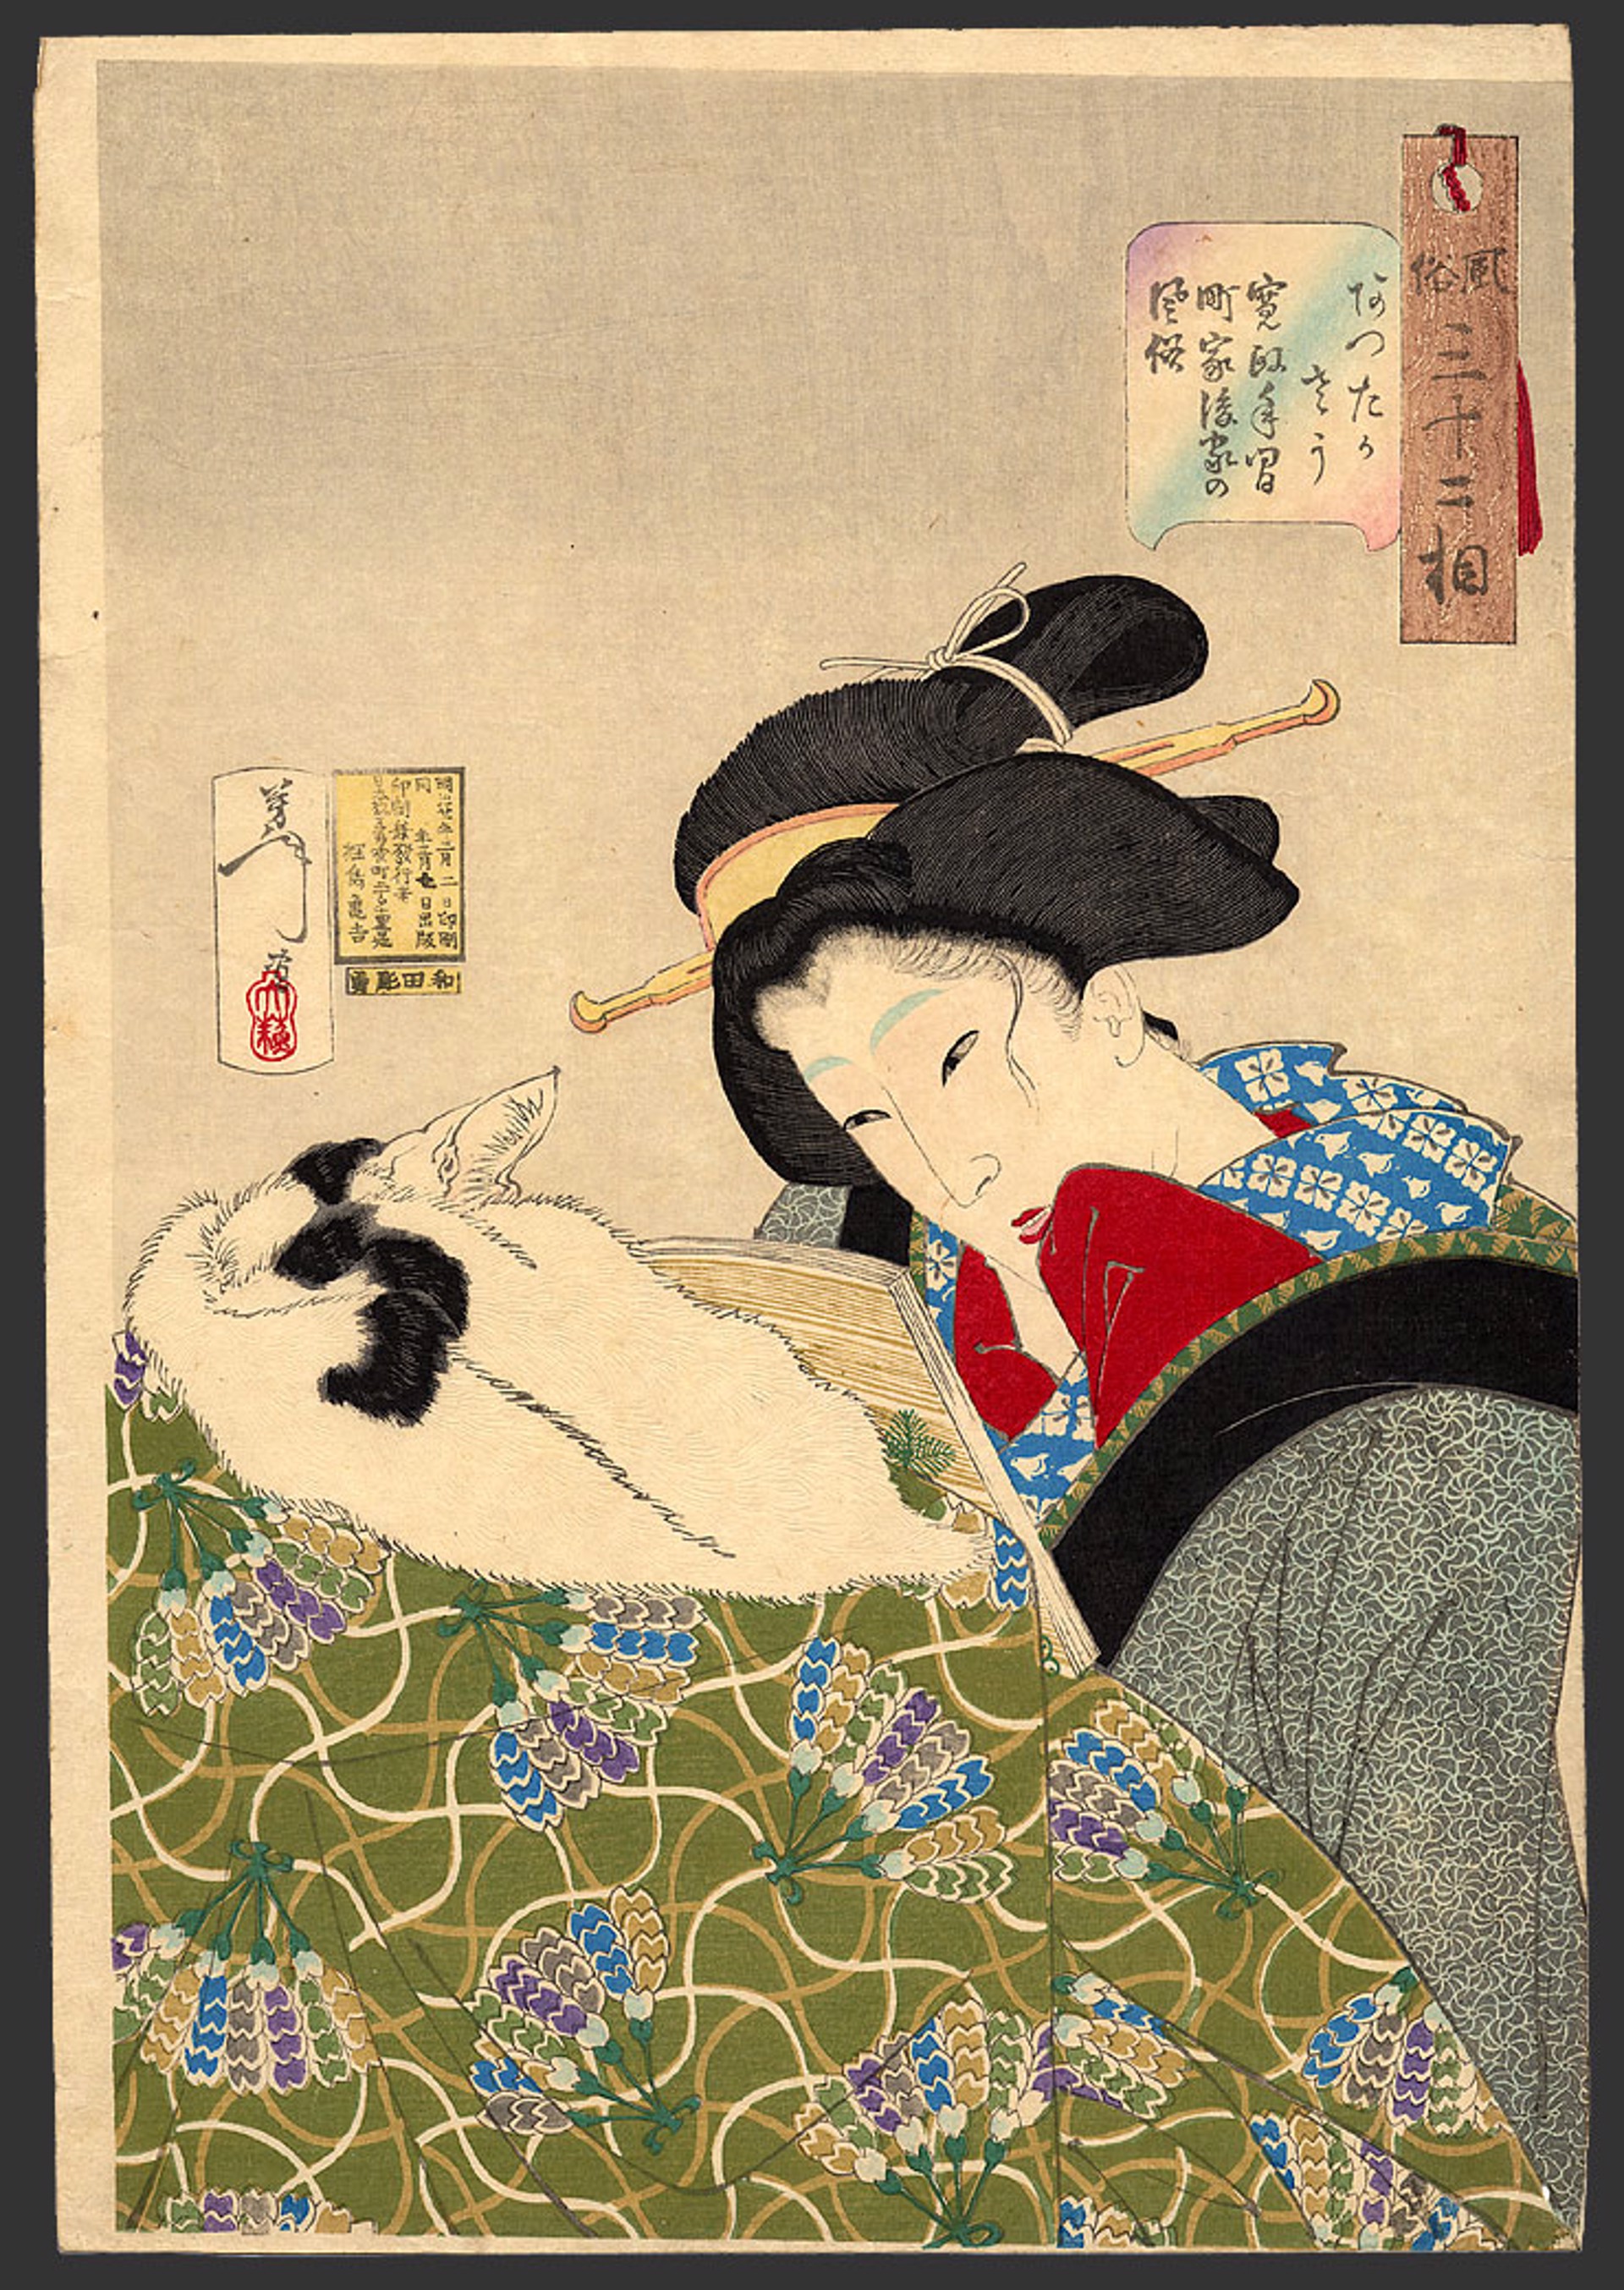 Looking warm, an urban widow of the Kansei era 32 Aspects of Women by Yoshitoshi